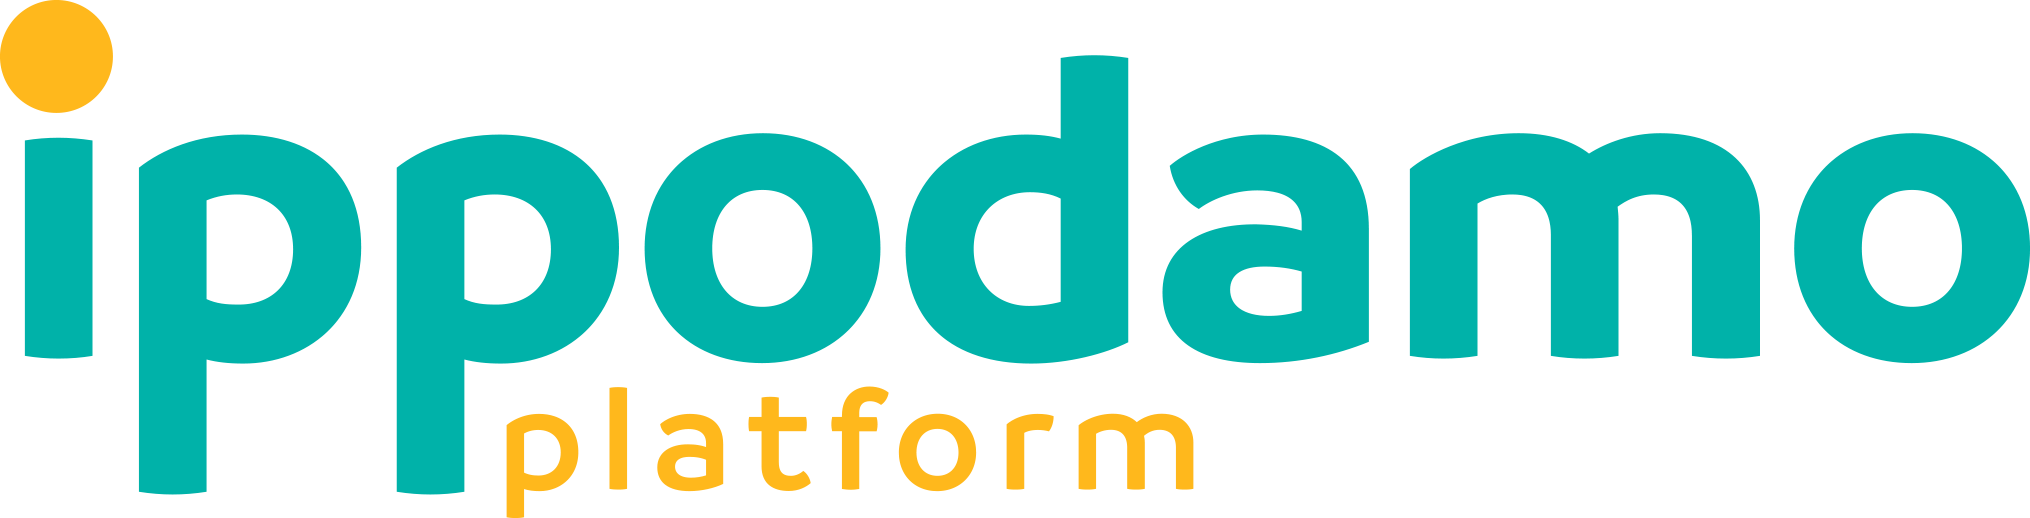 Ippodamo Platform